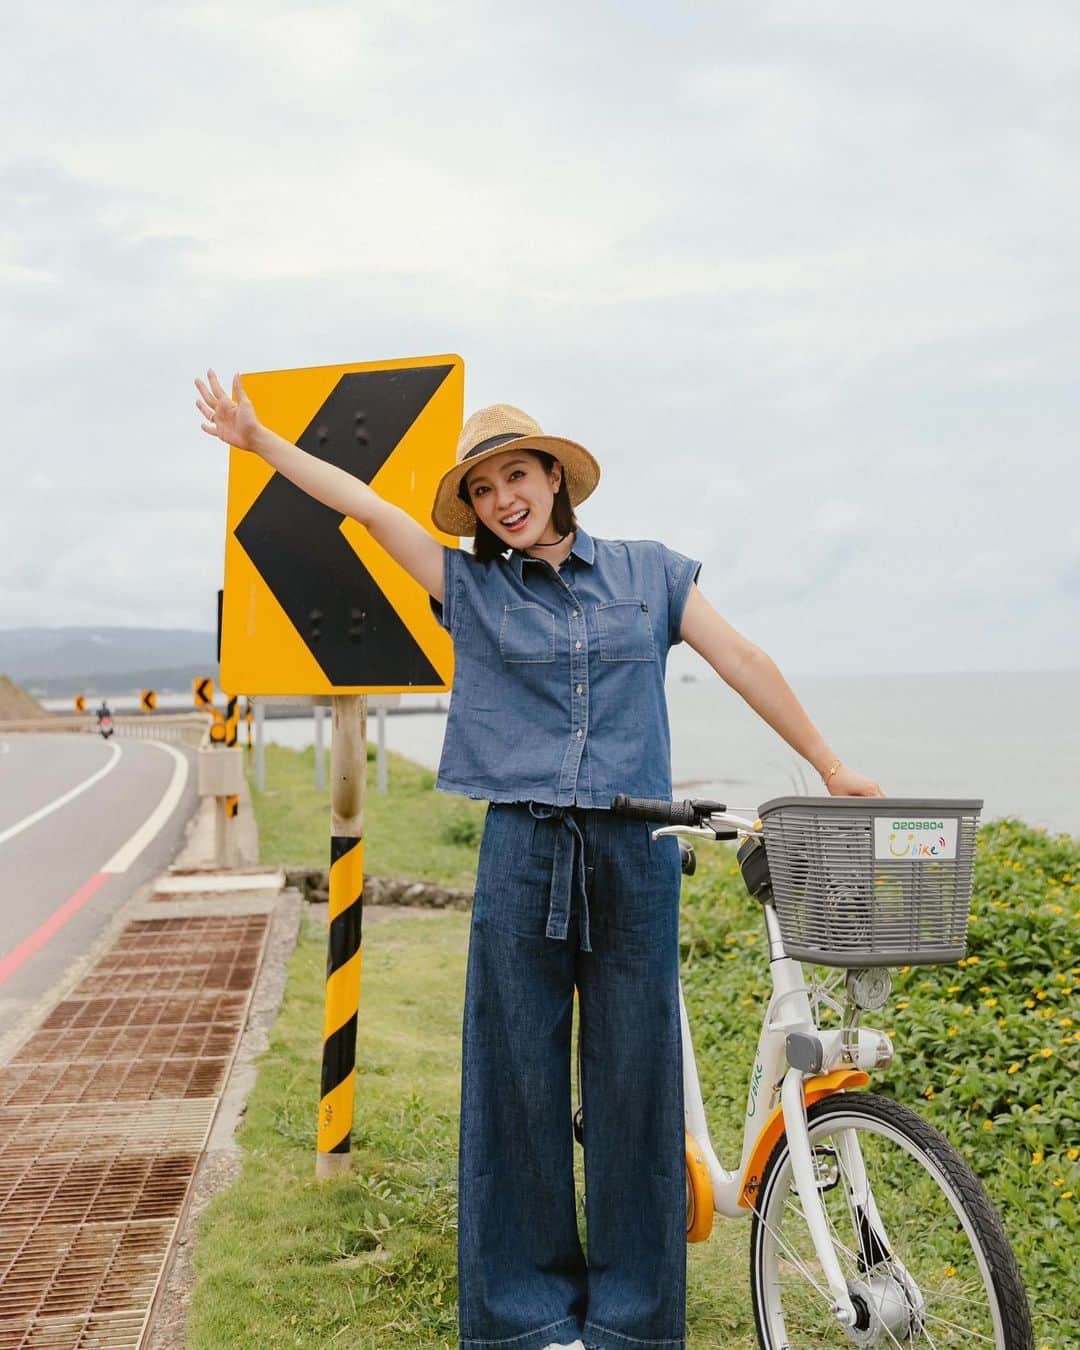 Grace葛瑞瑞のインスタグラム：「在台灣這種海島型氣候，每到夏天真的是又悶又熱🫠 尤其是孩子們又正值體力旺盛需要熱血陪伴的年紀， 當熱浪來襲時， 要長時間待在戶外更是一大考驗！   這時候只要選對衣服的材質就能靠著穿搭來降溫❄️  @brappers_jeans 的  #玉石丹寧系列 讓我們多了一個選擇～ 炎熱的夏日裡也能輕鬆穿上牛仔褲，舒適涼爽又自在！   常常說體表溫度通常會比實際溫度還要來得高， 主要是因為環境溼度越高，水分的蒸發也就越慢， 而導致不易散熱！ 玉石丹寧的布料結合了低比熱奈米粉體和吸濕排汗的纖維， 可以維持一定比例的水氣，提供優越的溫度調節， 穿起來會比一般丹寧來的涼爽許多～ 此次搭配了幾套穿搭就算在悶熱的海邊待上幾個小時也沒問題❤️    #玉石丹寧高腰彈性七分褲 簡單的深藍牛仔洗色， 以及高腰七分的版型， 無論高矮胖瘦都能輕鬆駕馭，是個不挑人的款式～    #高腰全棉寬褲 根本是肉肉腿、假跨寬、小腹婆的救星👍🏻 高腰寬褲的版型，除了可以輕鬆的藏著小肉肉，還能凸顯腰部線條 展現優美的柔和氣質💕    #彈性短袖襯衫 下擺流蘇 有種率性的優美感～ 襯衫領展現出女性最迷人的頸部線條 落肩的小蓋袖，修飾了沒自信的掰掰袖 整體俐落又不失優雅氣質❤️    #BRAPPERS Couture 印花T 這就不用多說了， 百搭必備款啊！ 簡單有質感的字樣根本是百年不敗～ 純棉的親膚面料就算流了一身汗也不會覺得不舒服   🛒即日起全台百貨專櫃、官網購買，全面八折～  #YourWonderWoman   #你的夏日涼伴  ｛本篇是品牌邀約分享文｝」